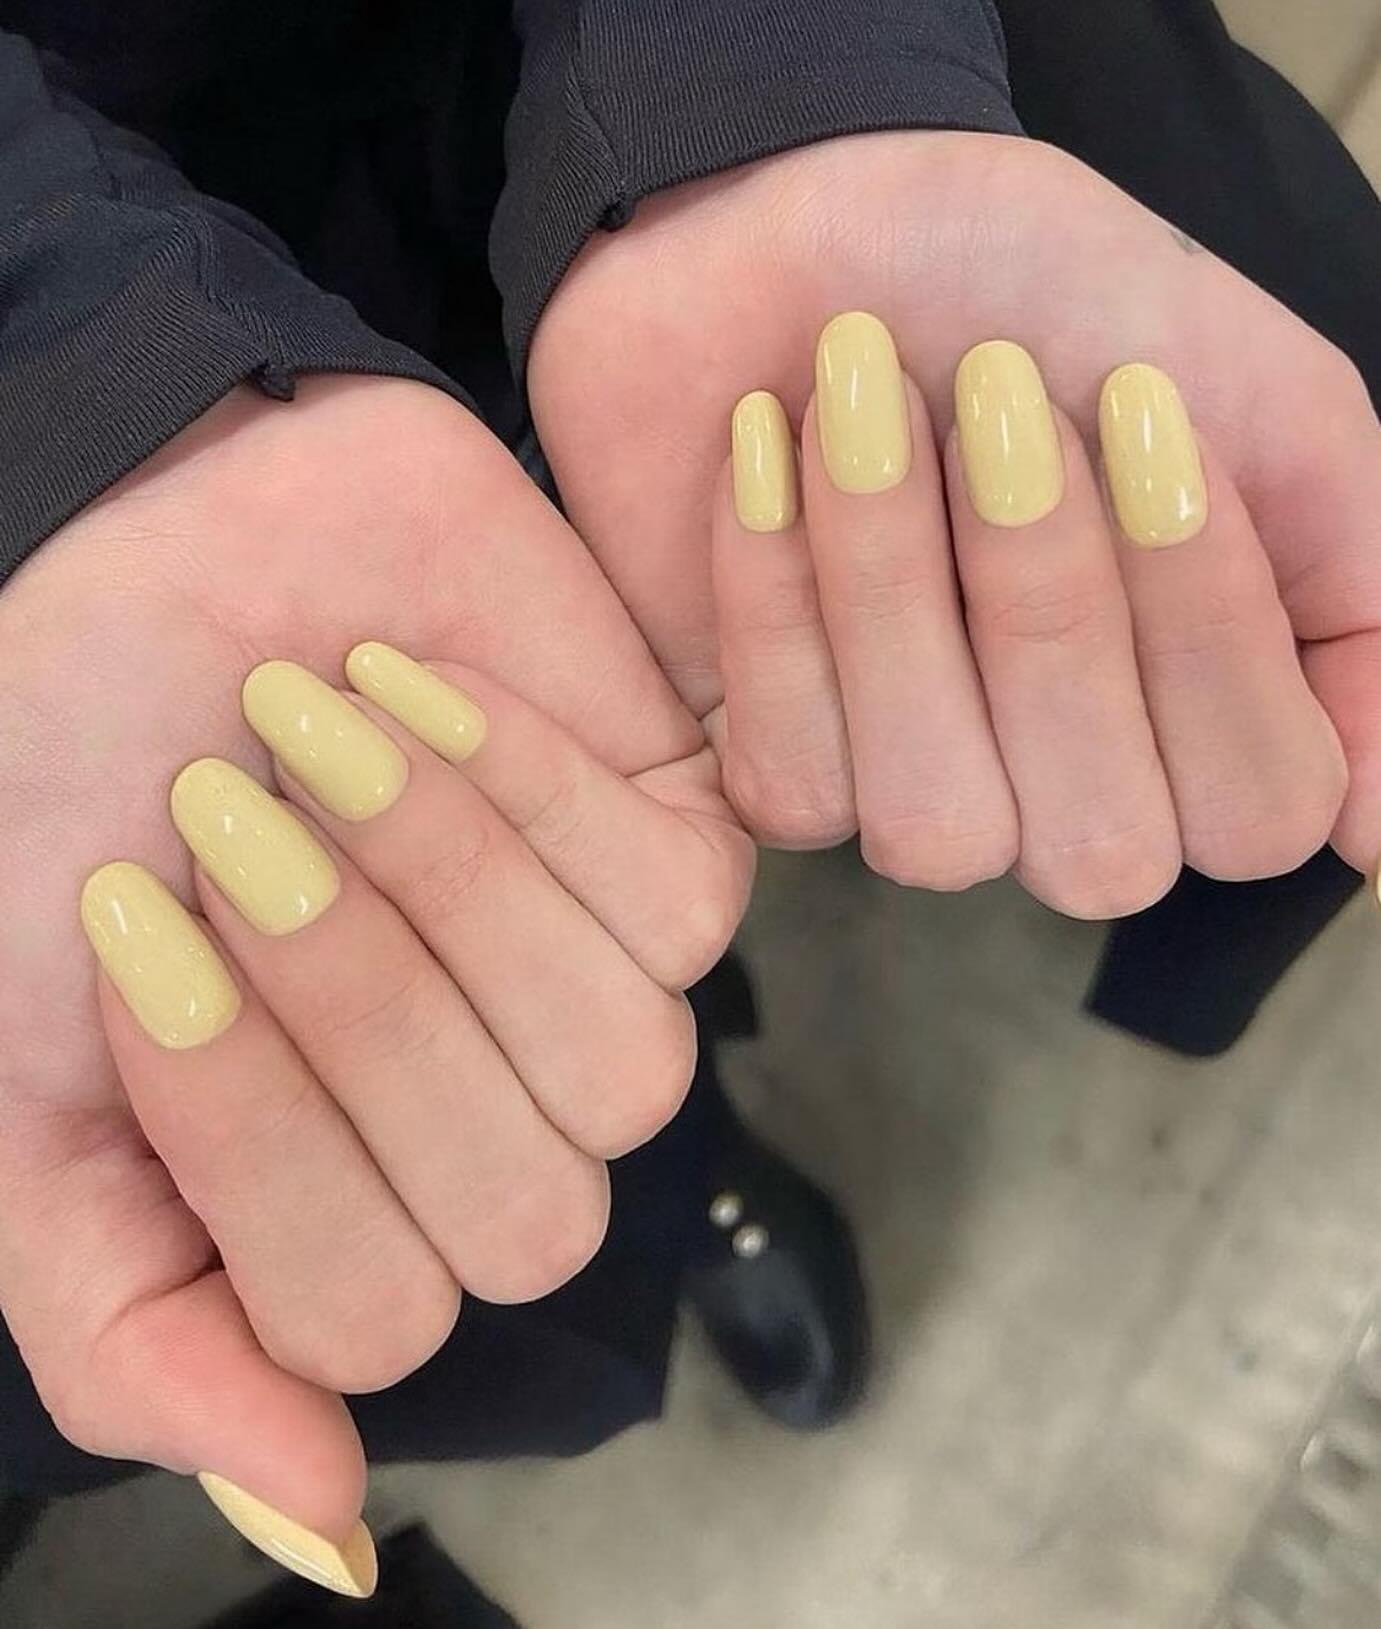 Wykonuje manicure dla Jennifer Lopez, Margot Robbie i Seleny Gomez. Technik paznokci celebrytów uznany za najmodniejszy kolor wiosny